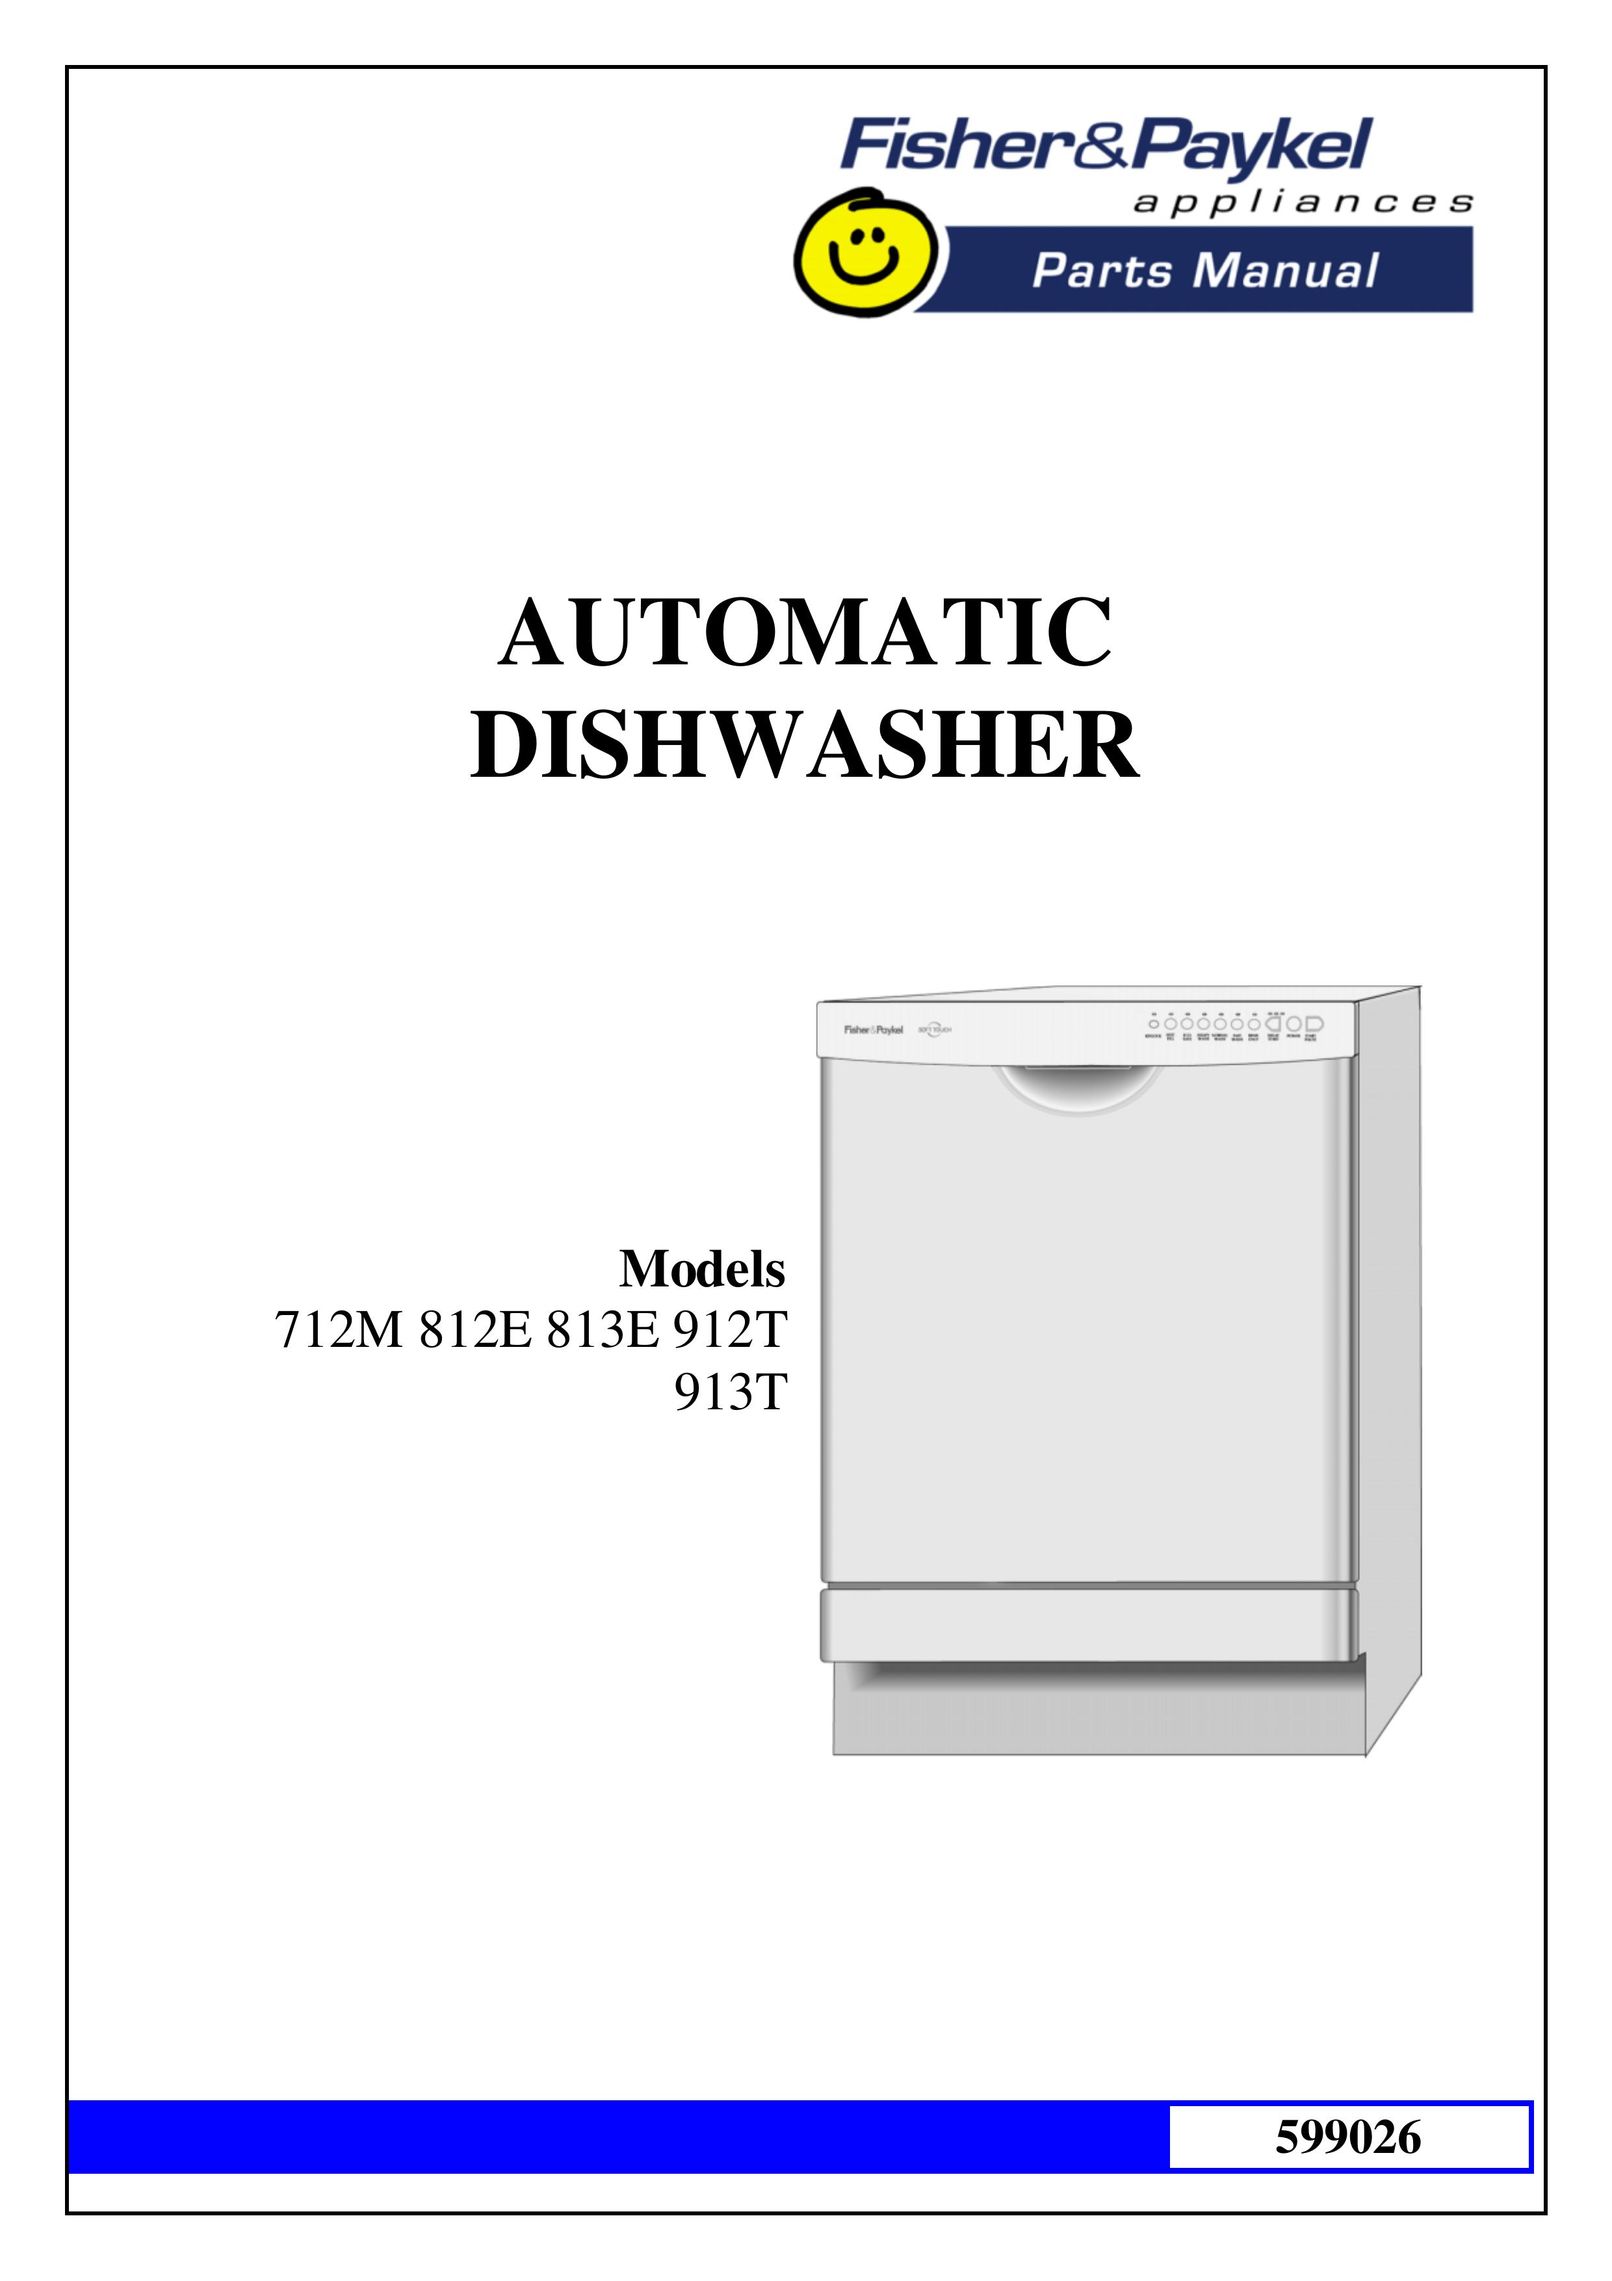 GE 712M Dishwasher User Manual